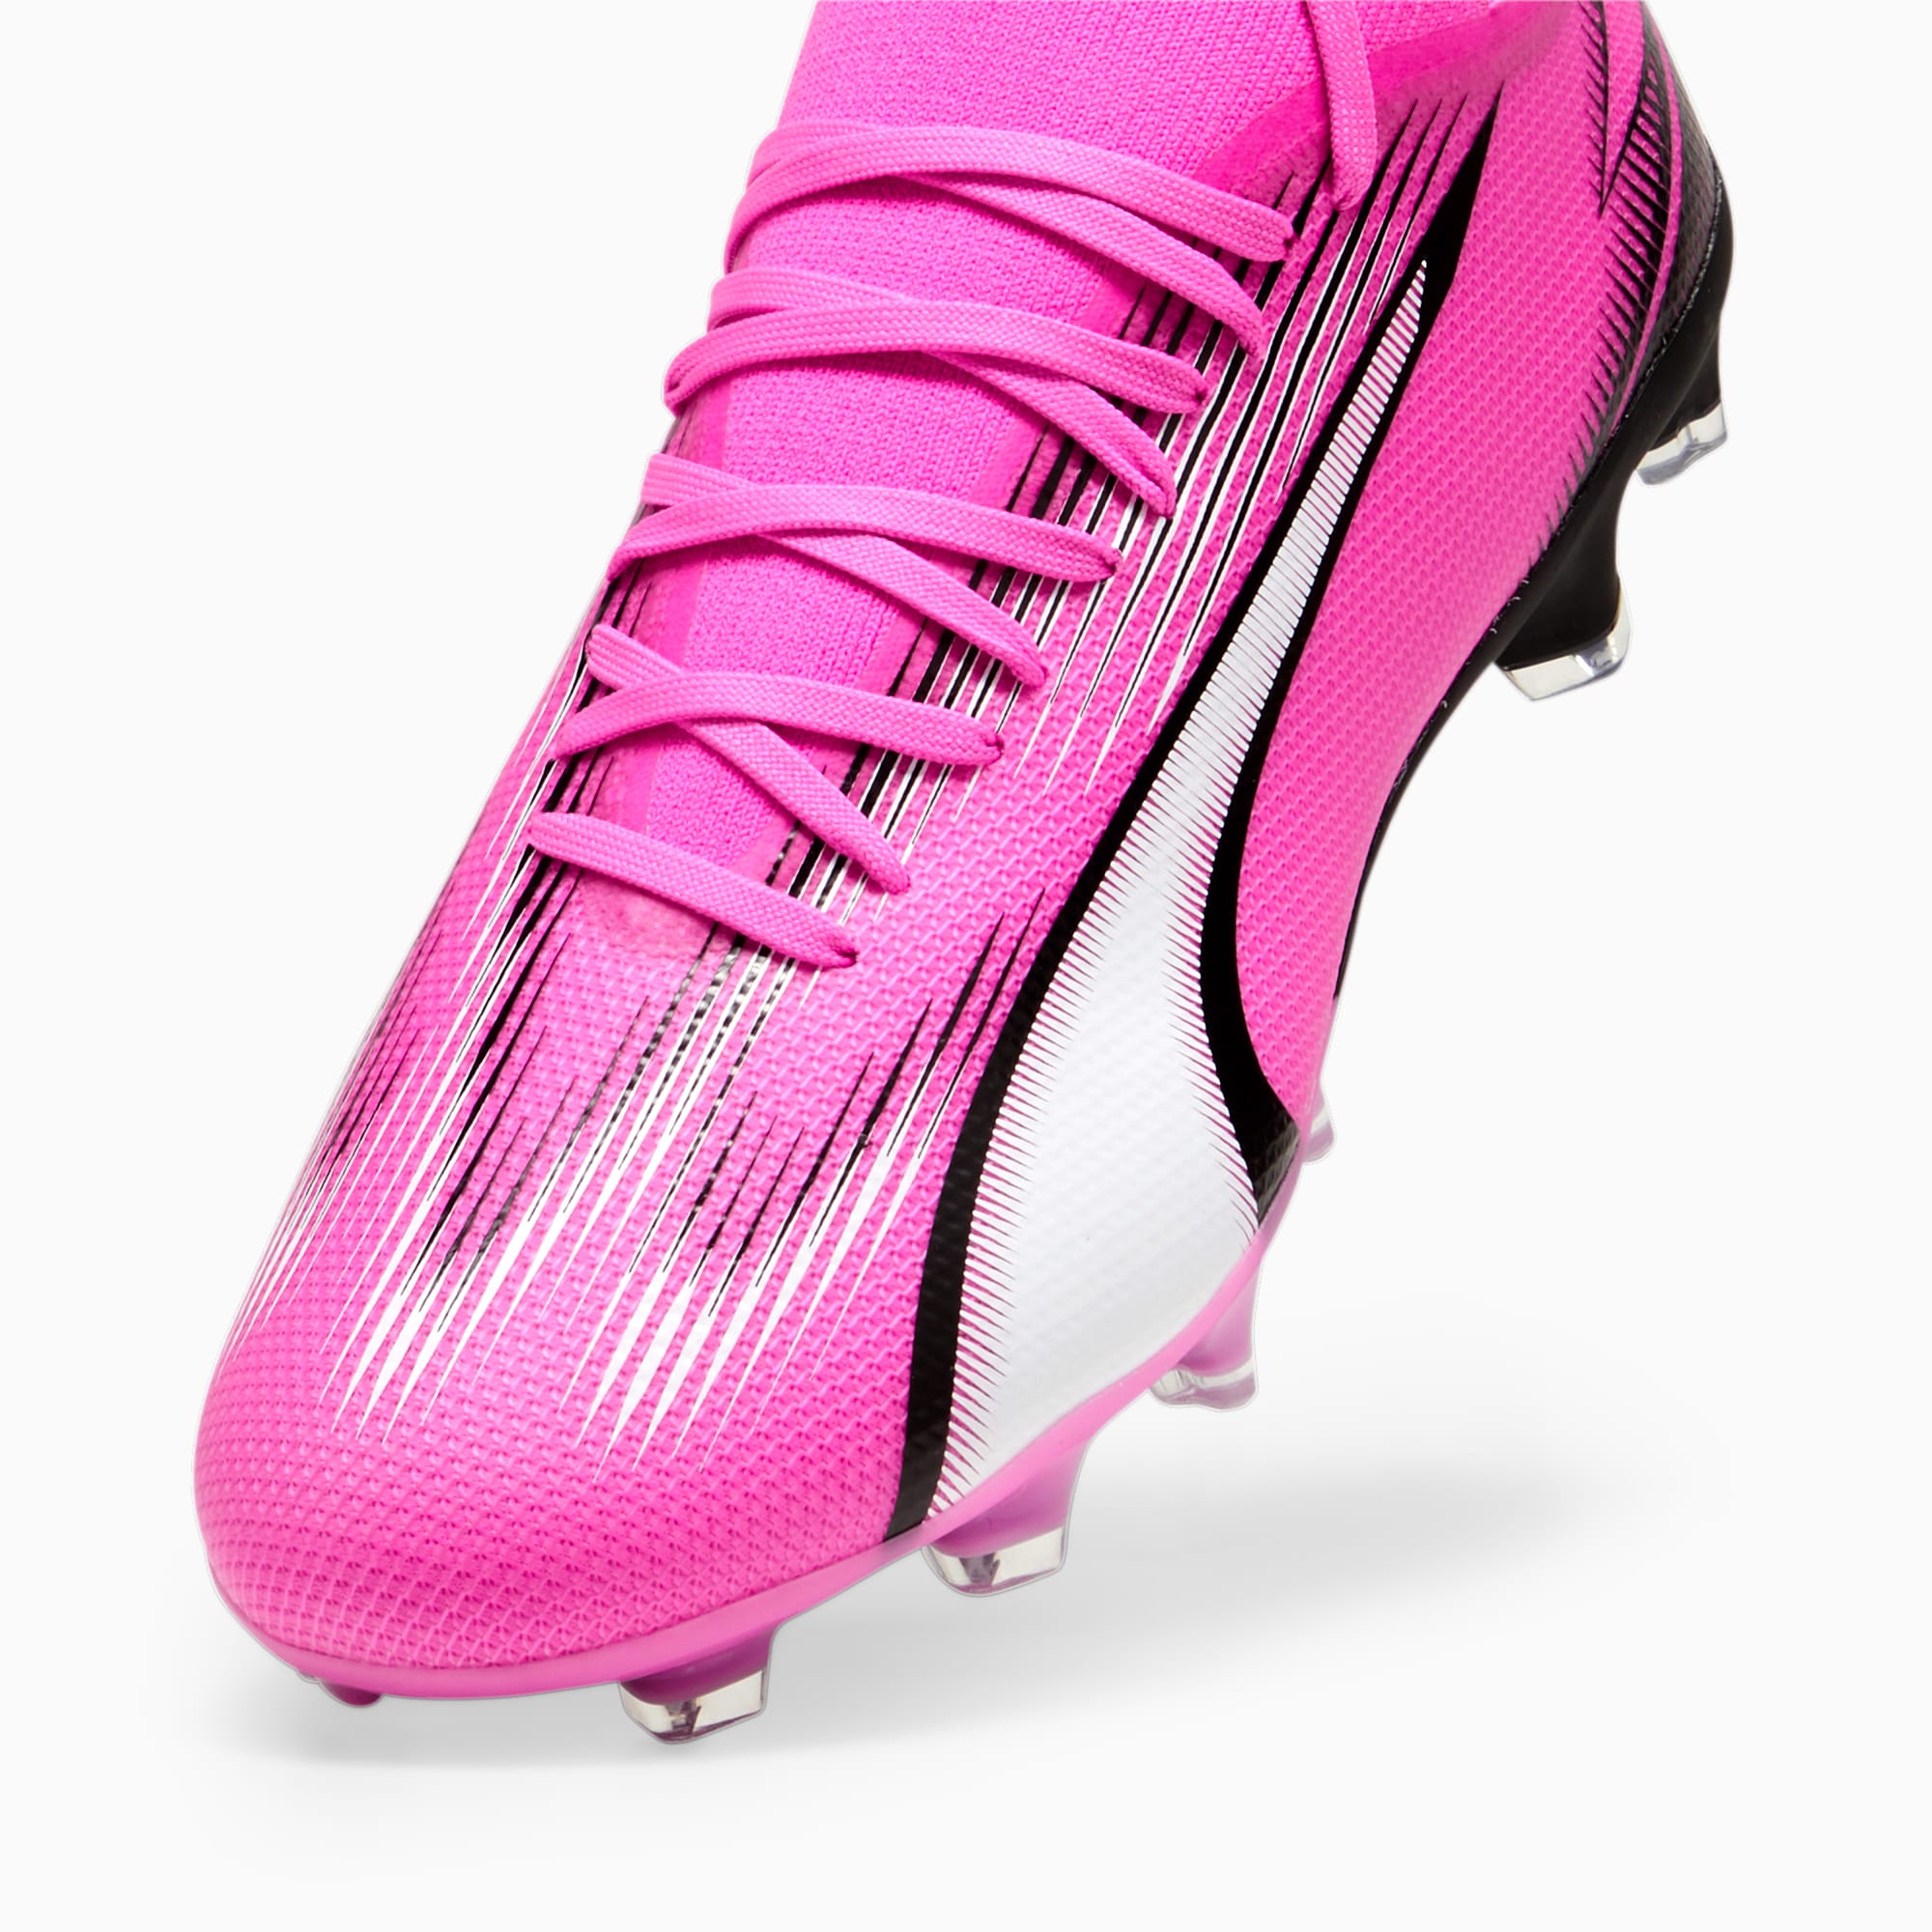 PUMA Chaussures De Football ULTRA MATCH FG/AG, Rose/Noir/Blanc